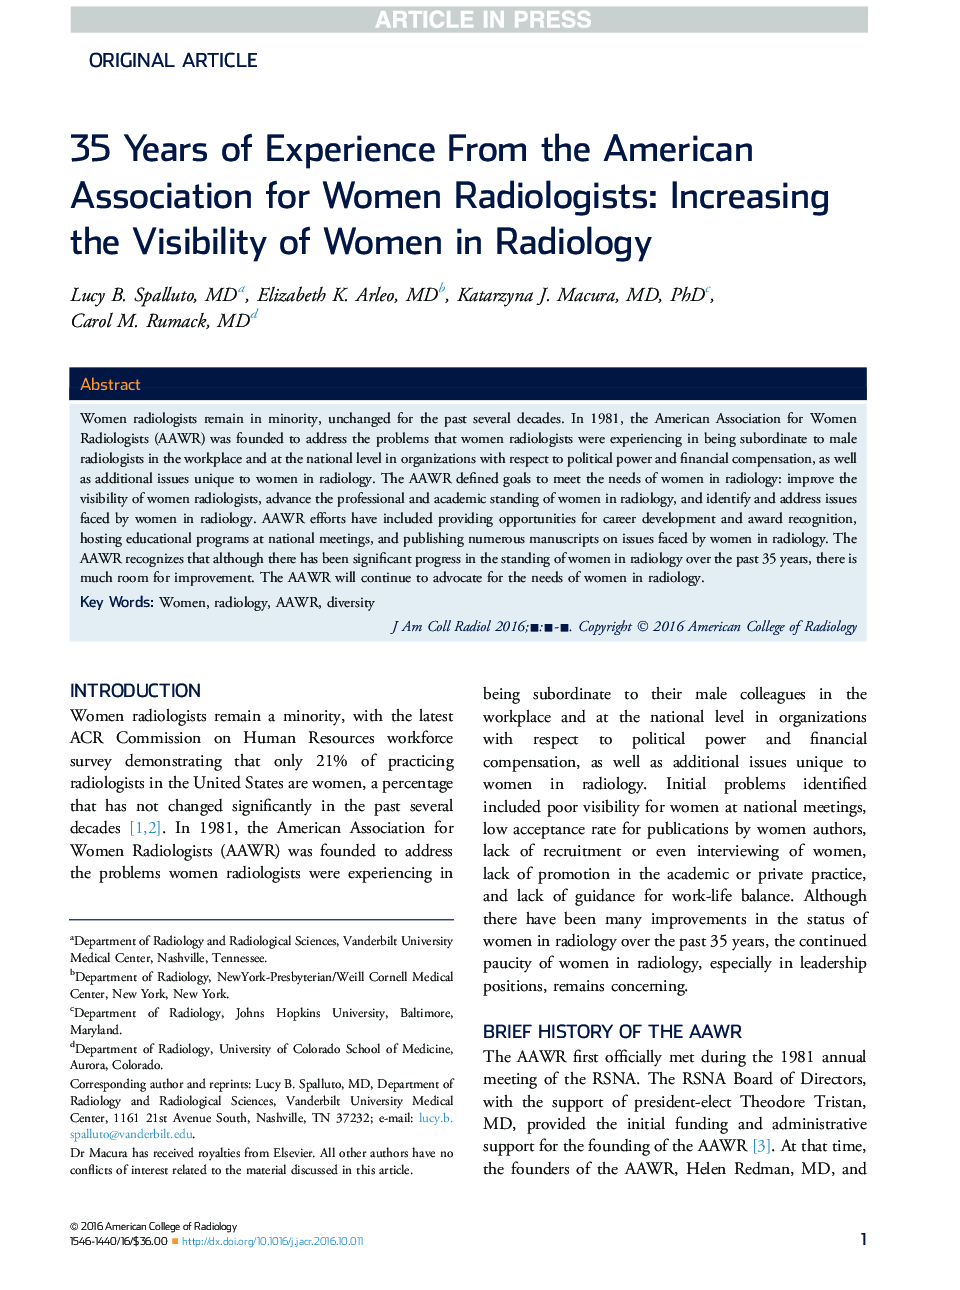 35 سال تجربه از انجمن آمریکایی زنان رادیولوژیست: افزایش دید زنان در رادیولوژی 